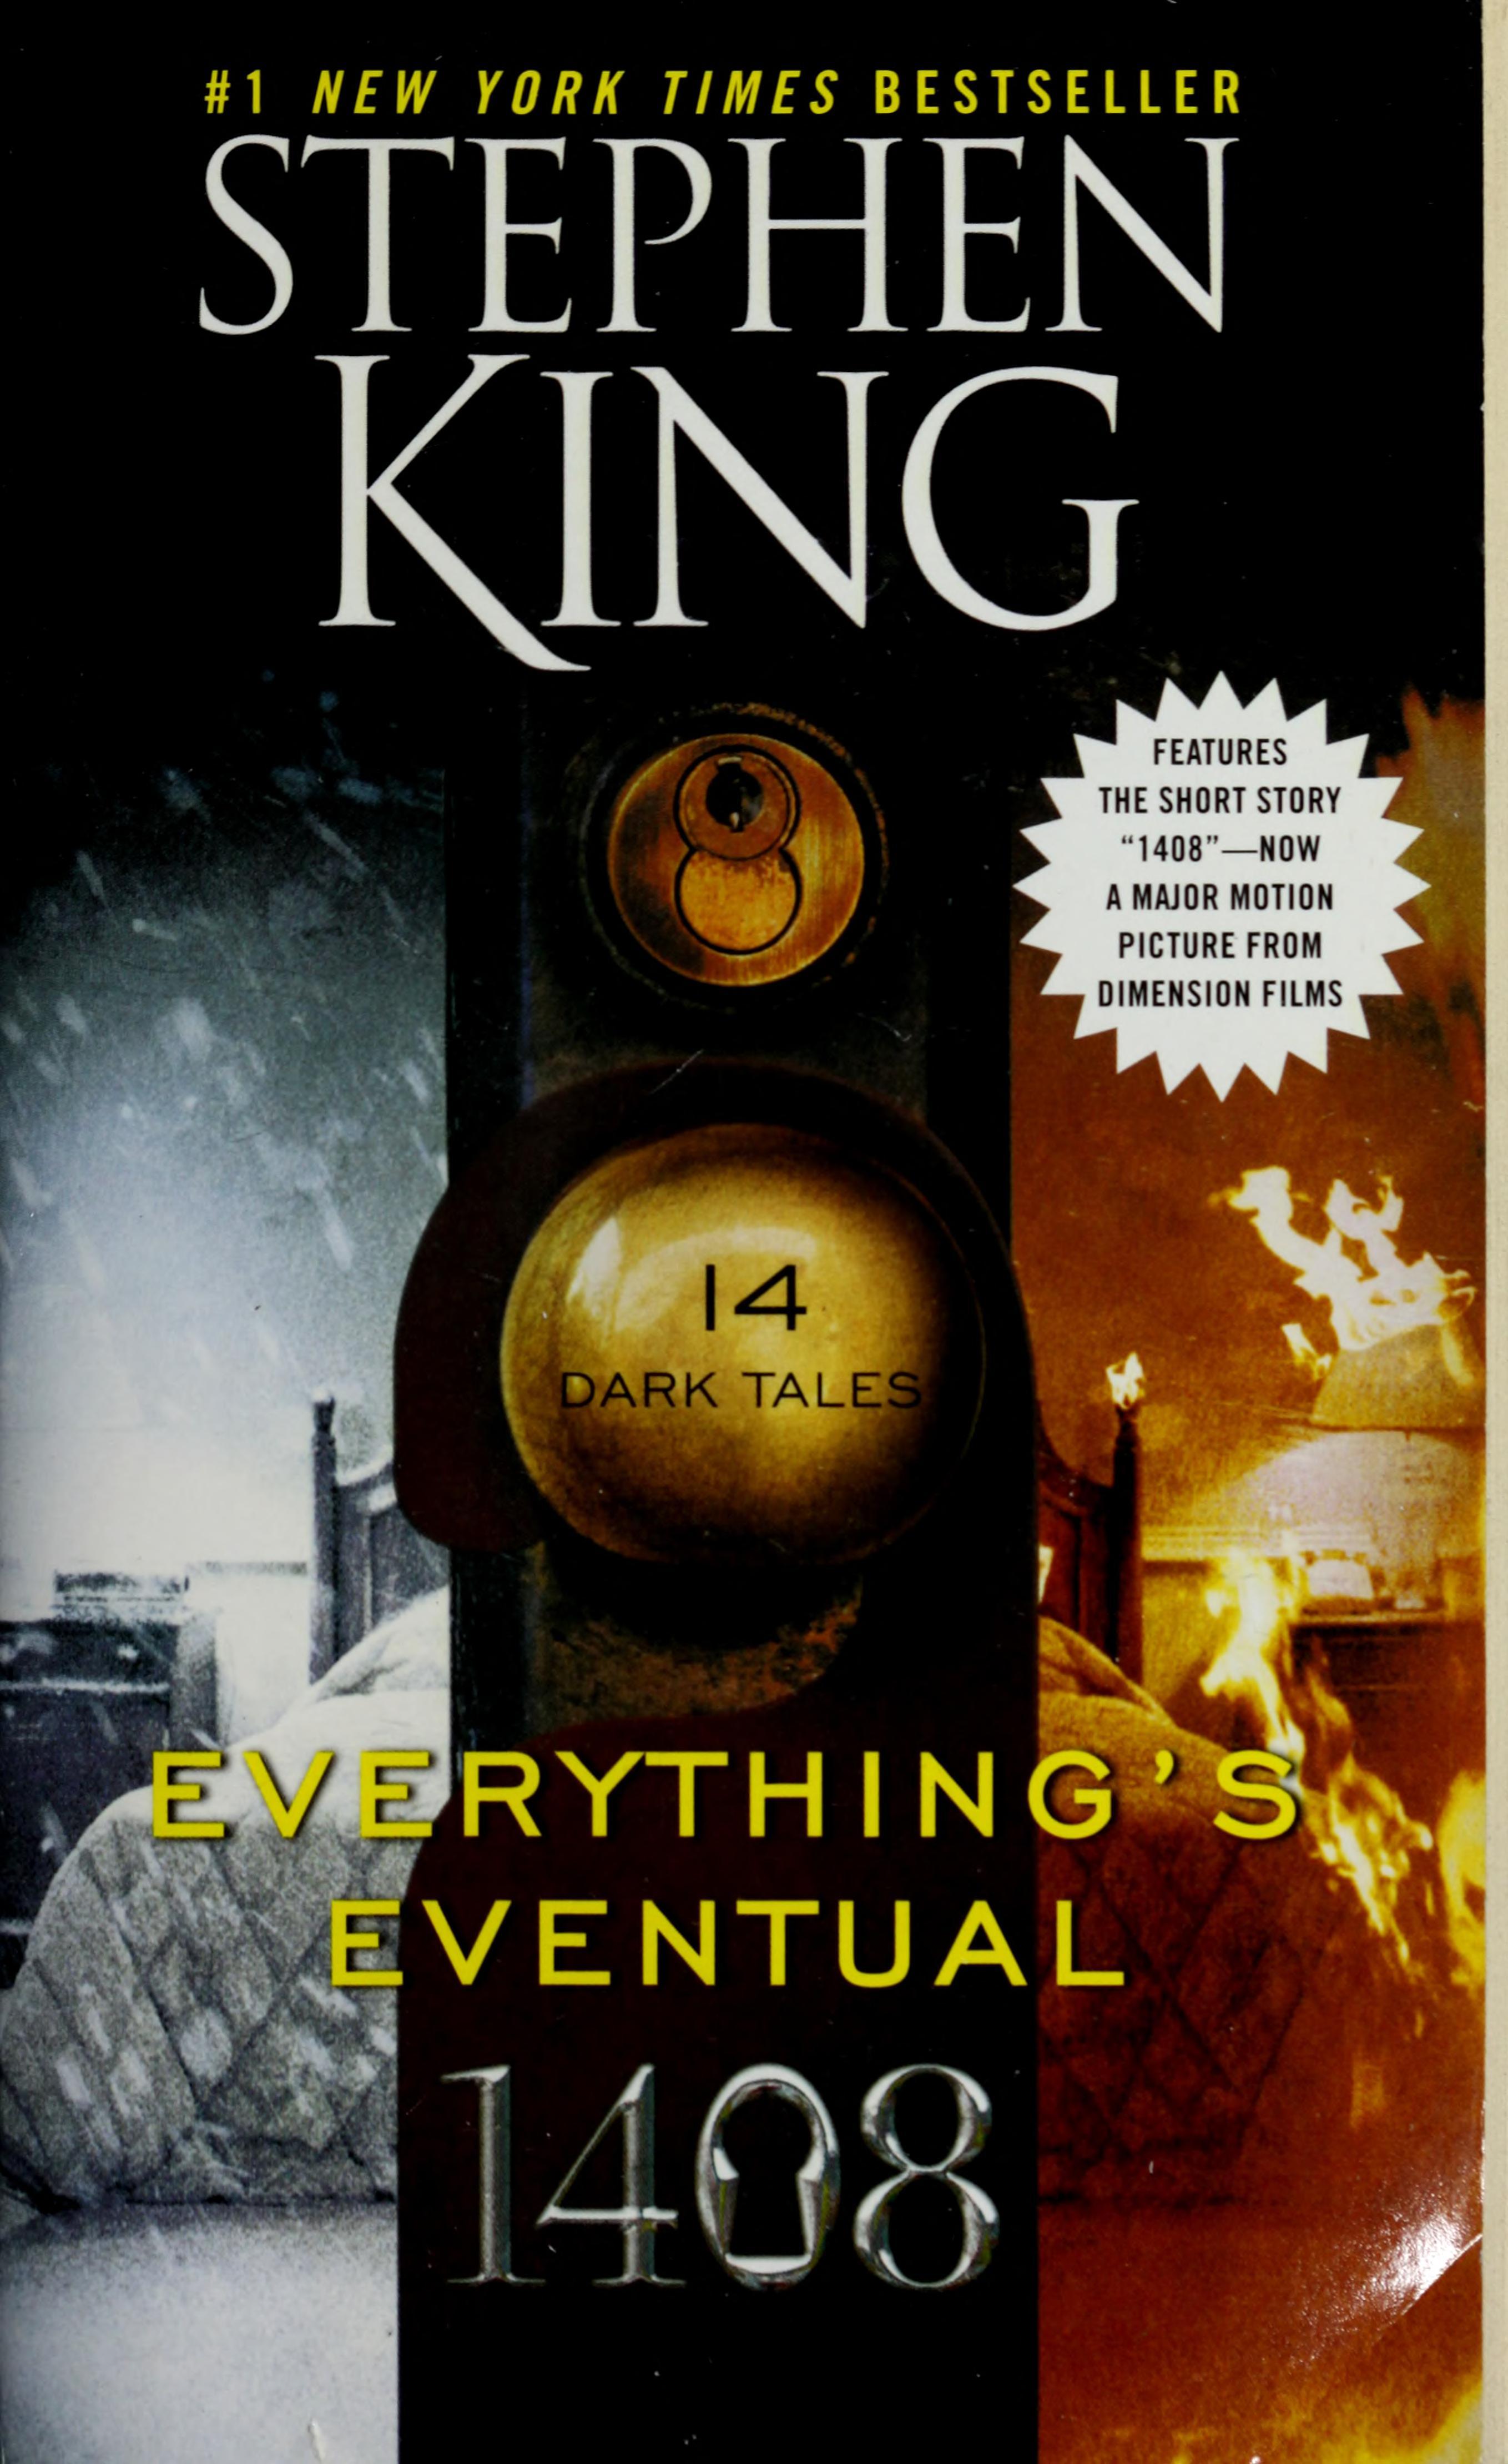 غلاف كتاب Everything's Eventual وقصة 1408 للكاتب ستيفن كينغ